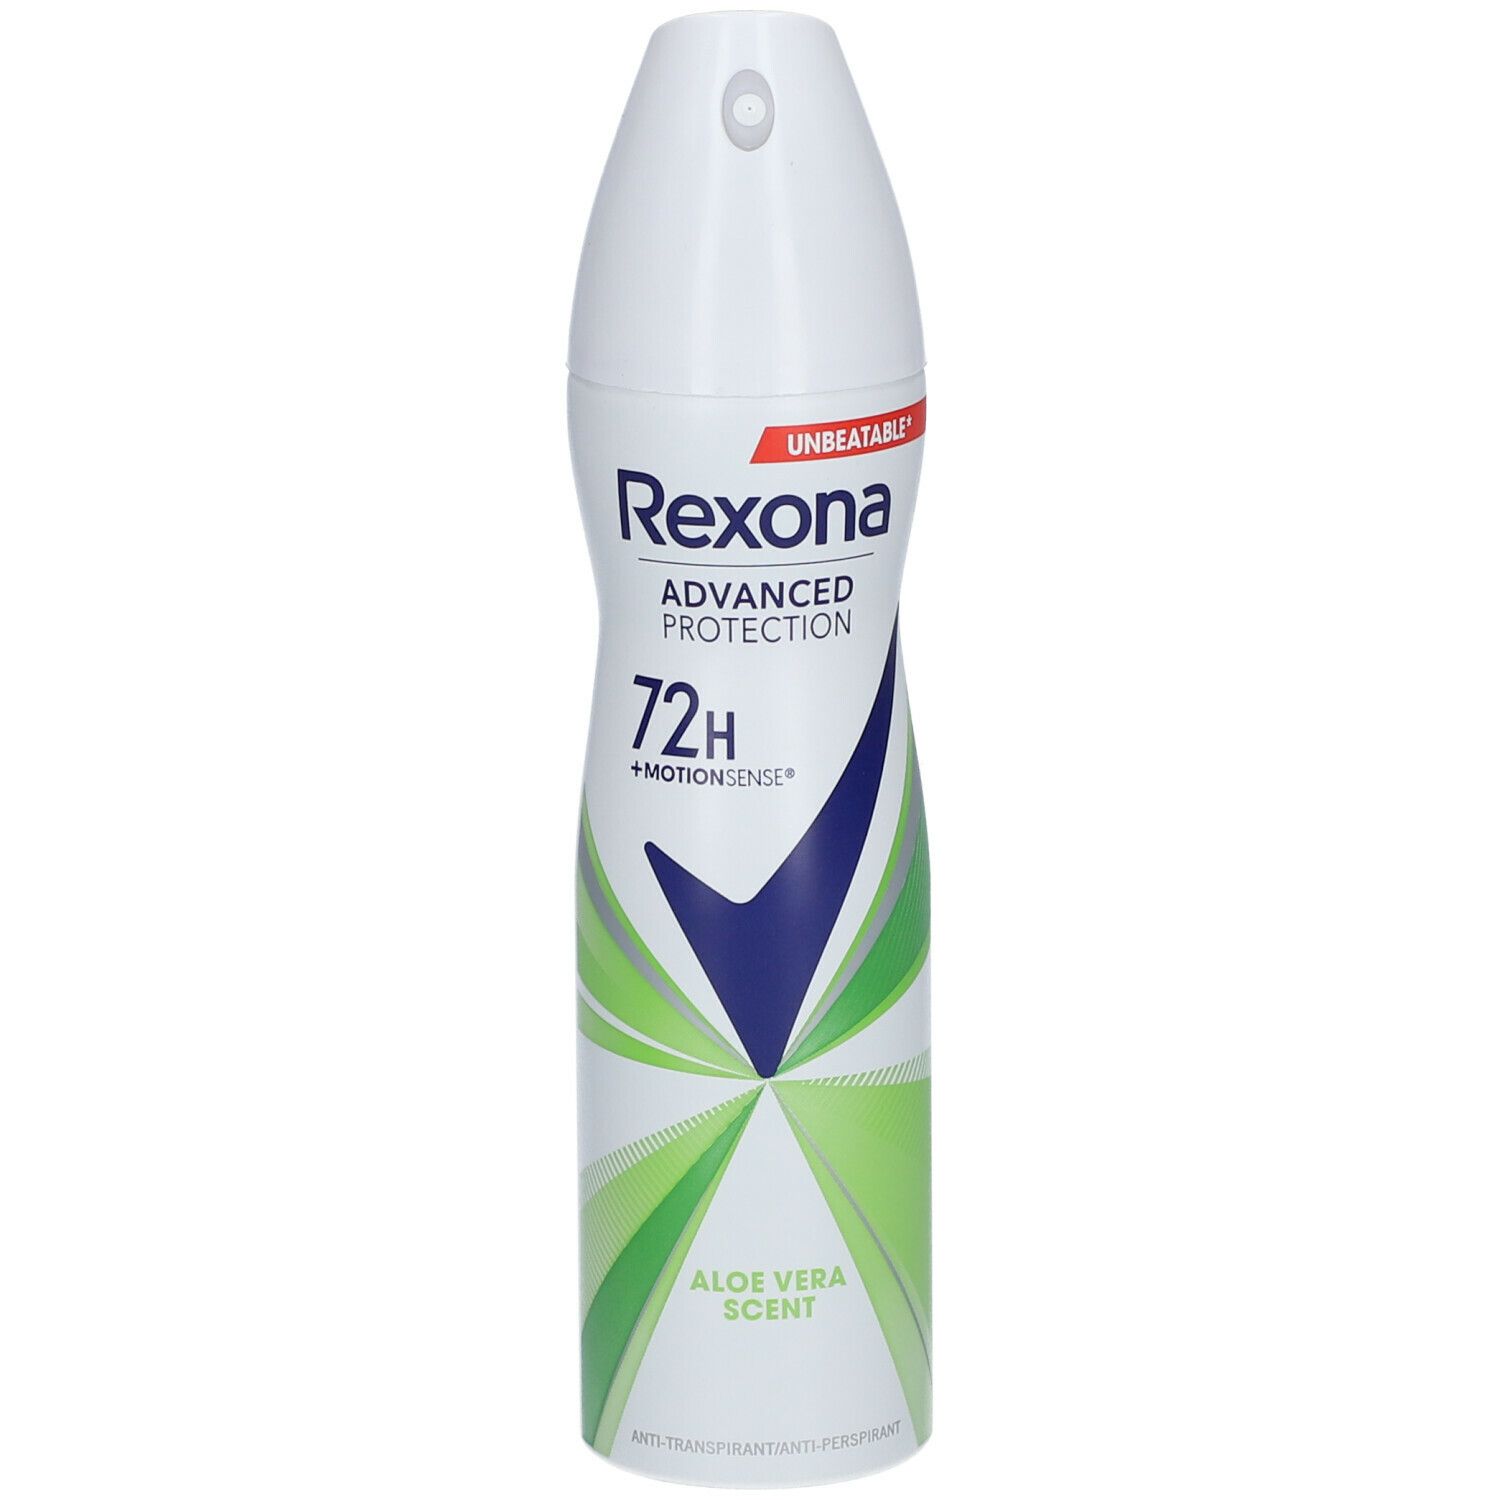 Rexona Advanced Protection Aloe Vera Anti-Transpirant Déodorant Spray 72h